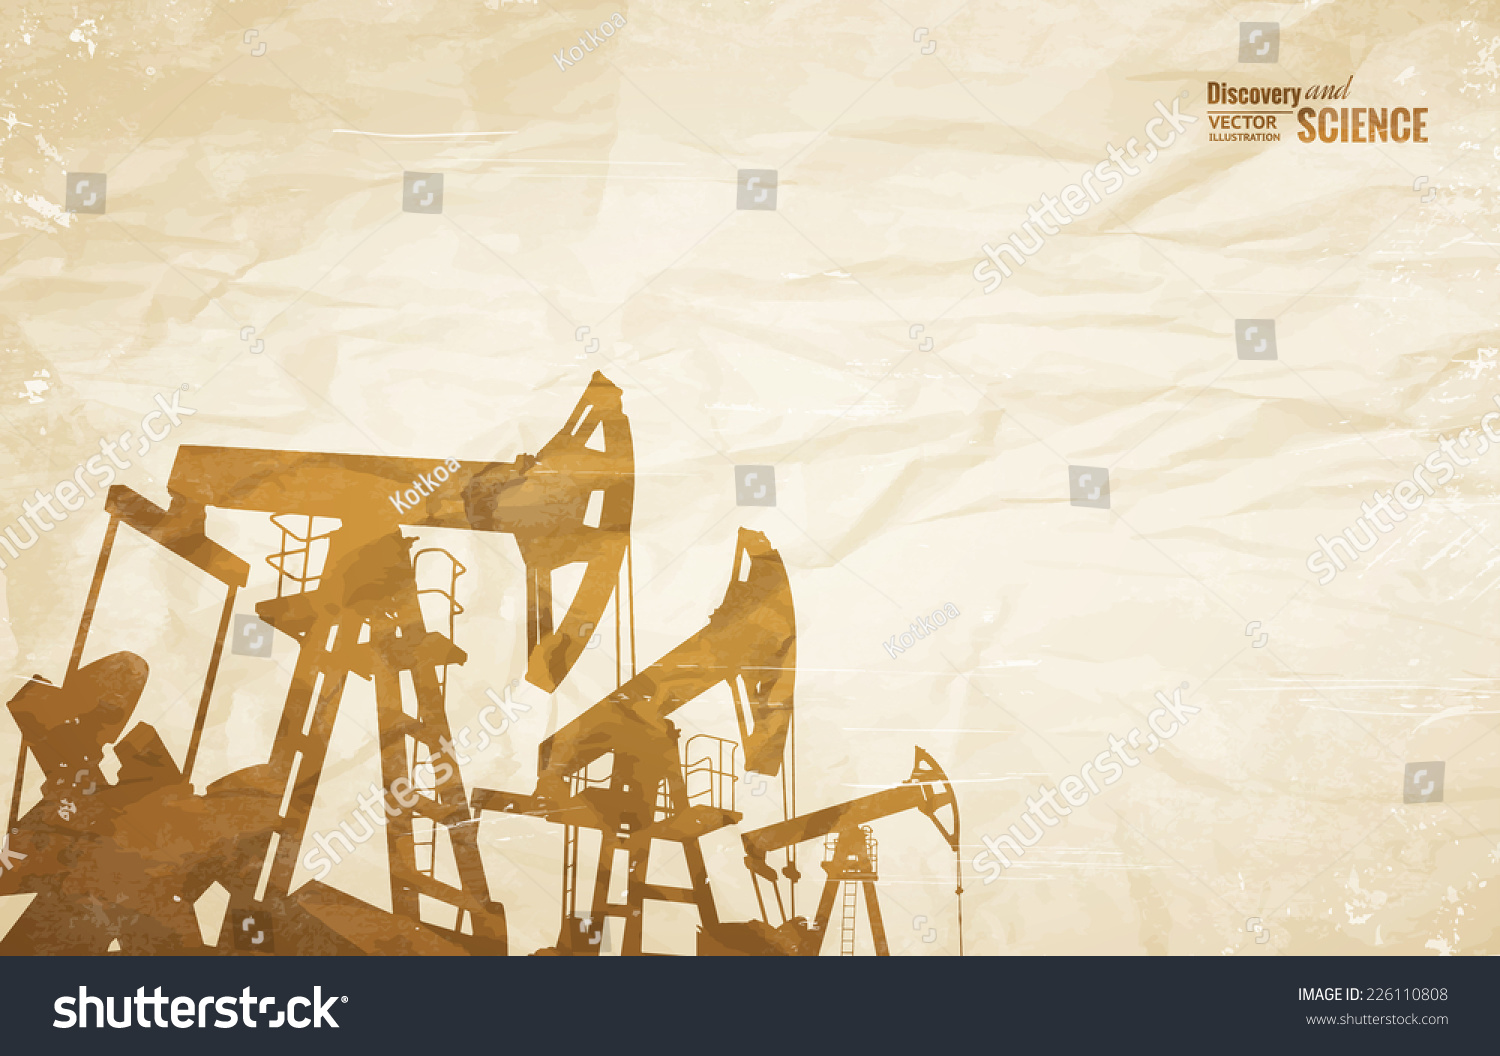 Макеты открыток для нефтяных